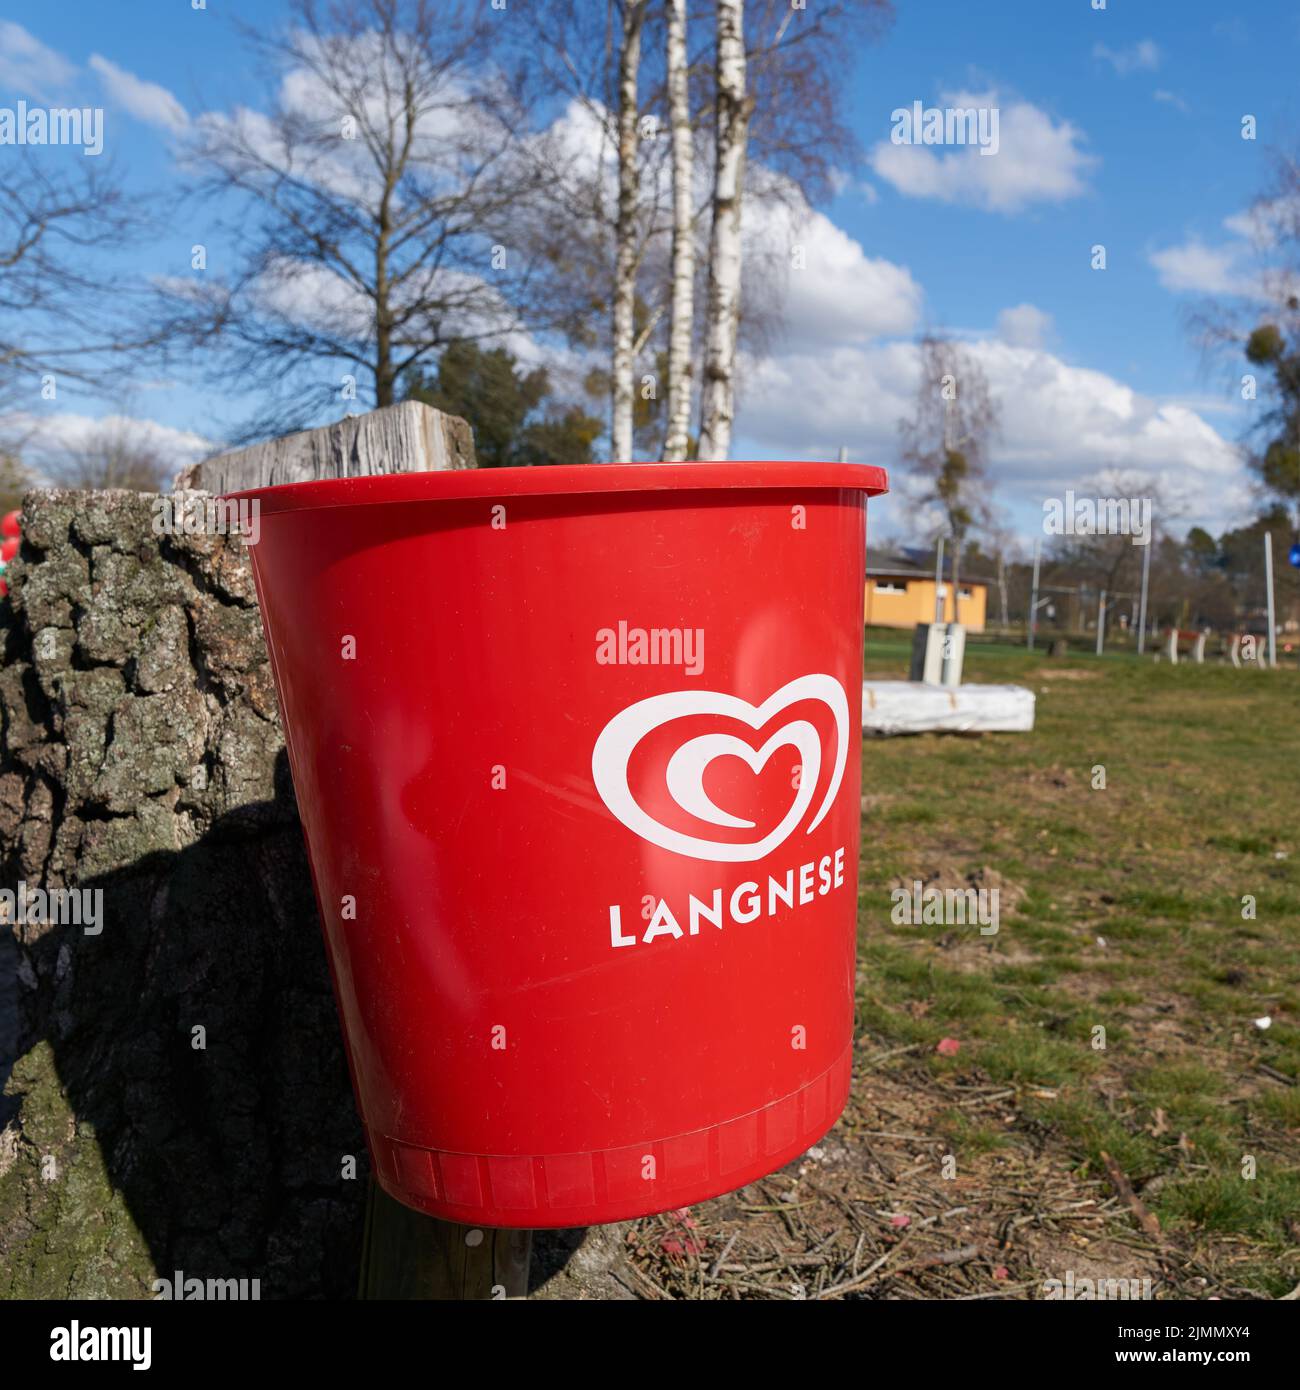 Papelera roja del fabricante de helados Langnese en un camping en Alemania Foto de stock